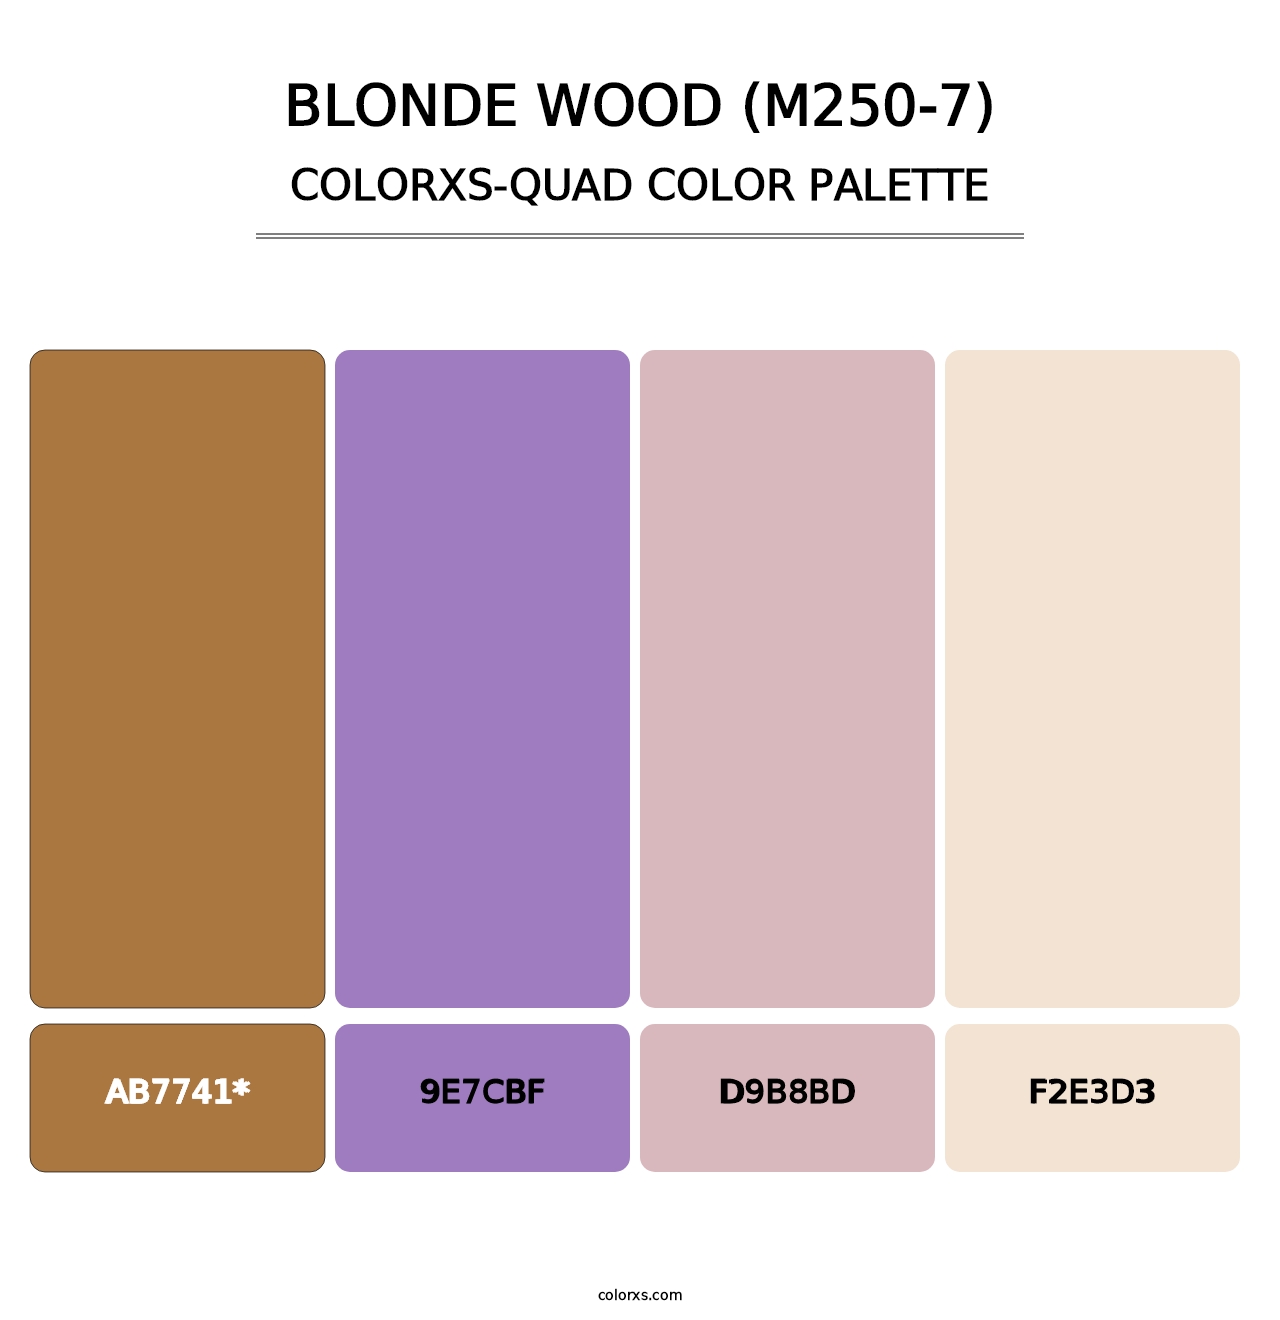 Blonde Wood (M250-7) - Colorxs Quad Palette